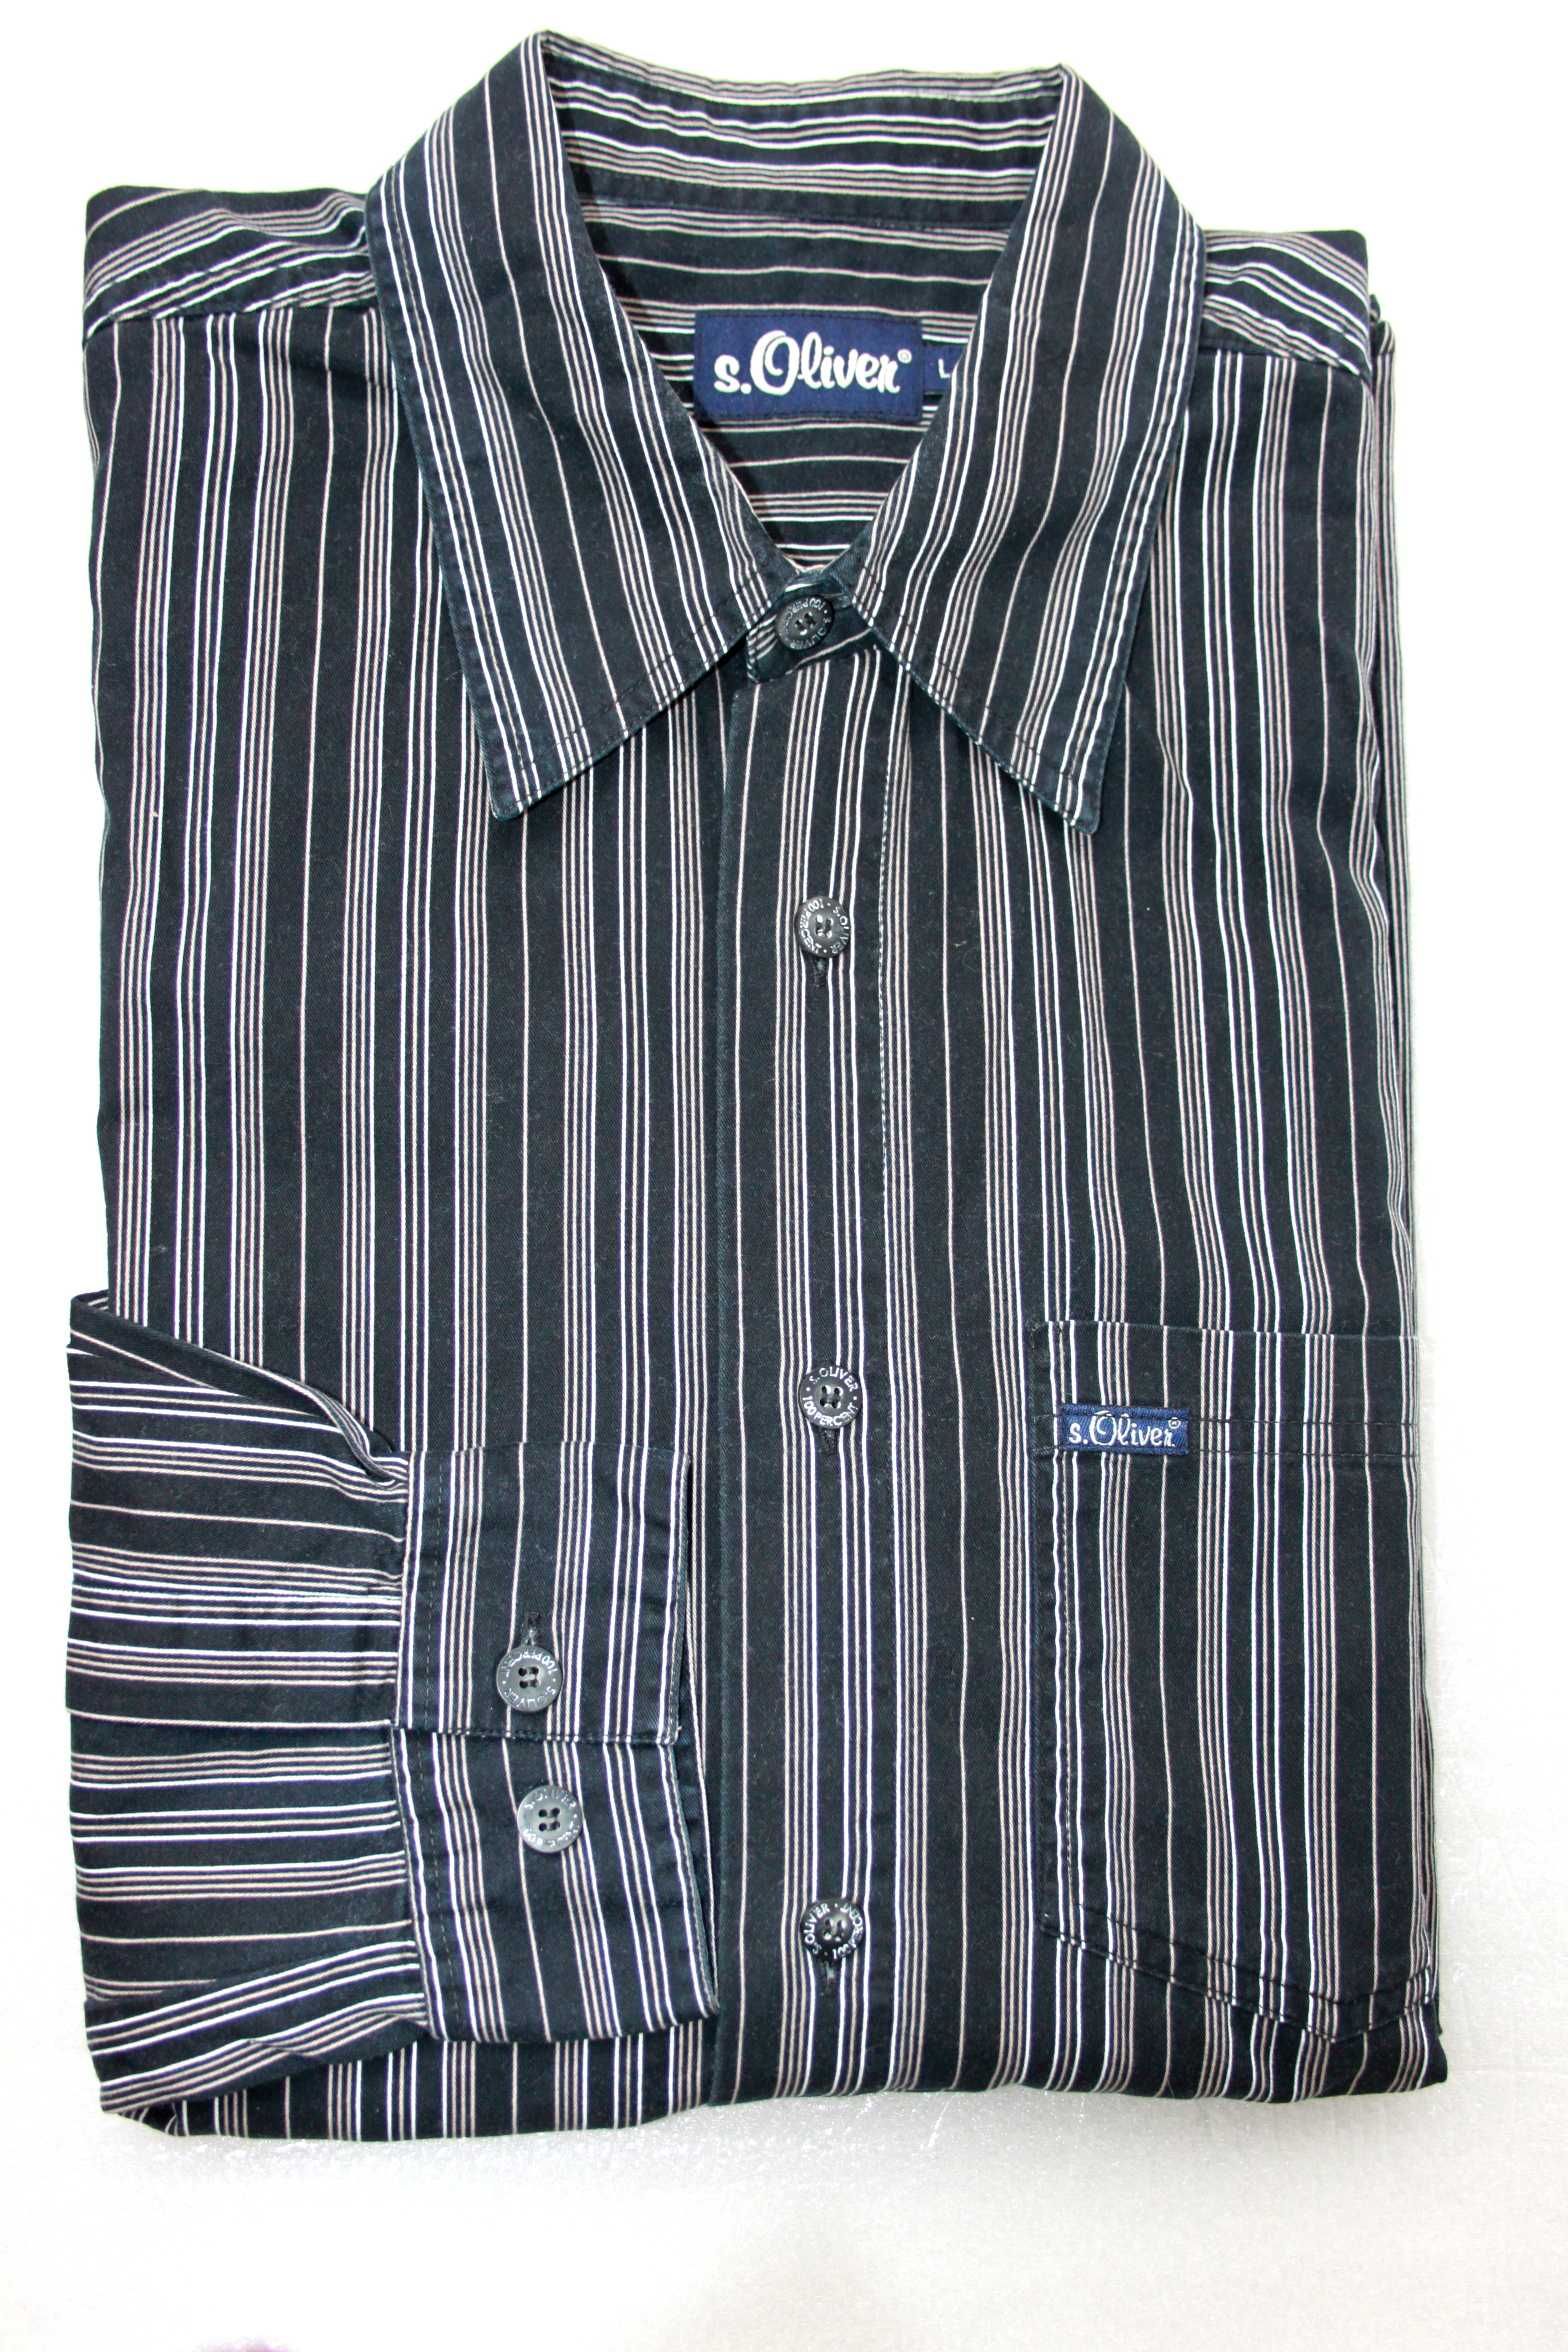 Мужские рубашки S.Oliver размер L (Индия)